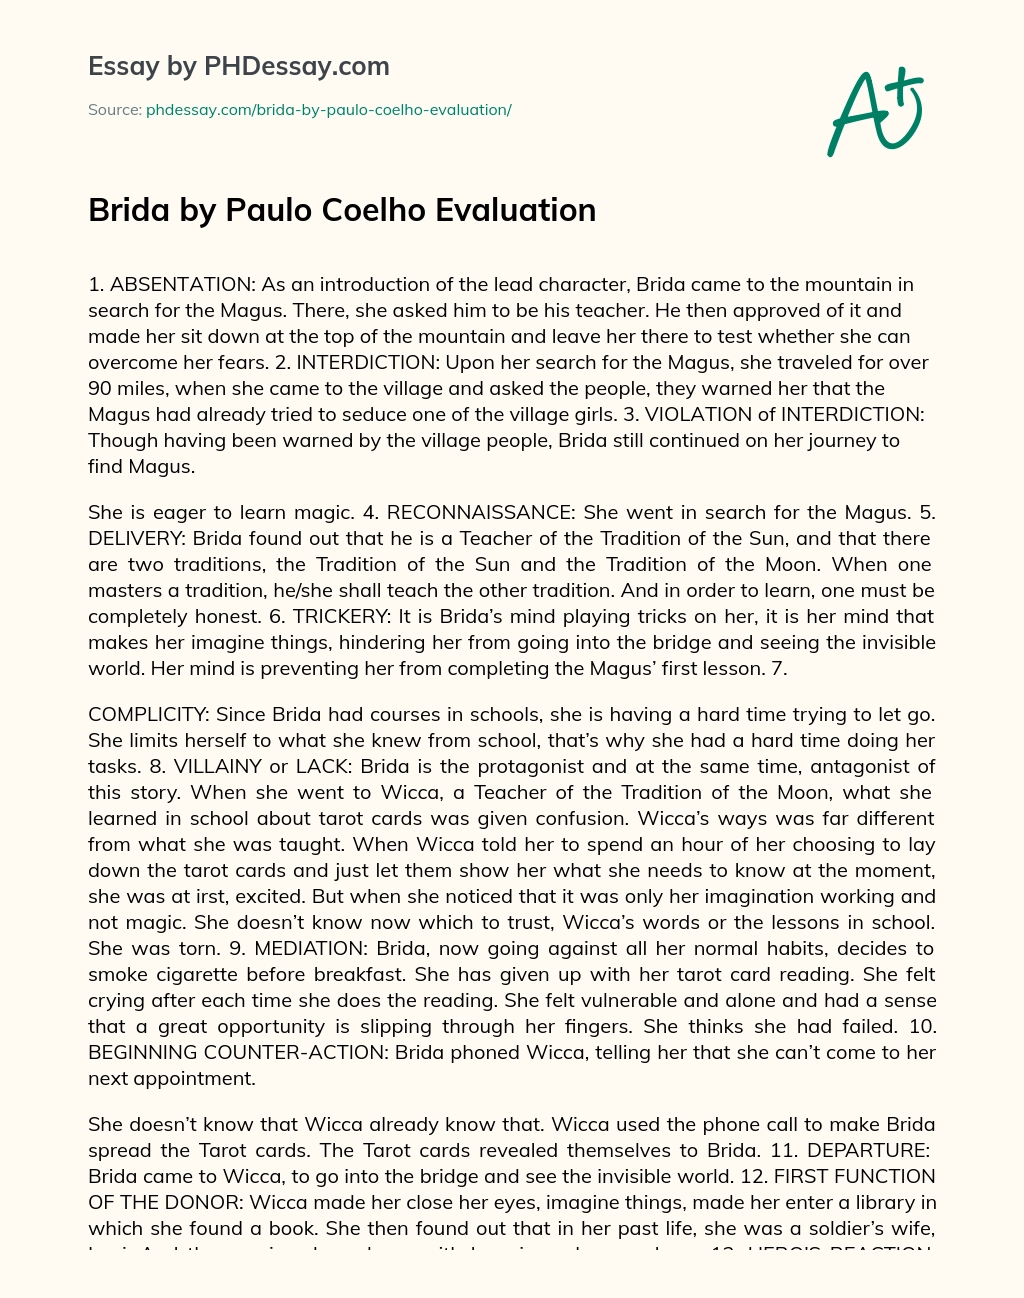 Brida by Paulo Coelho Evaluation essay